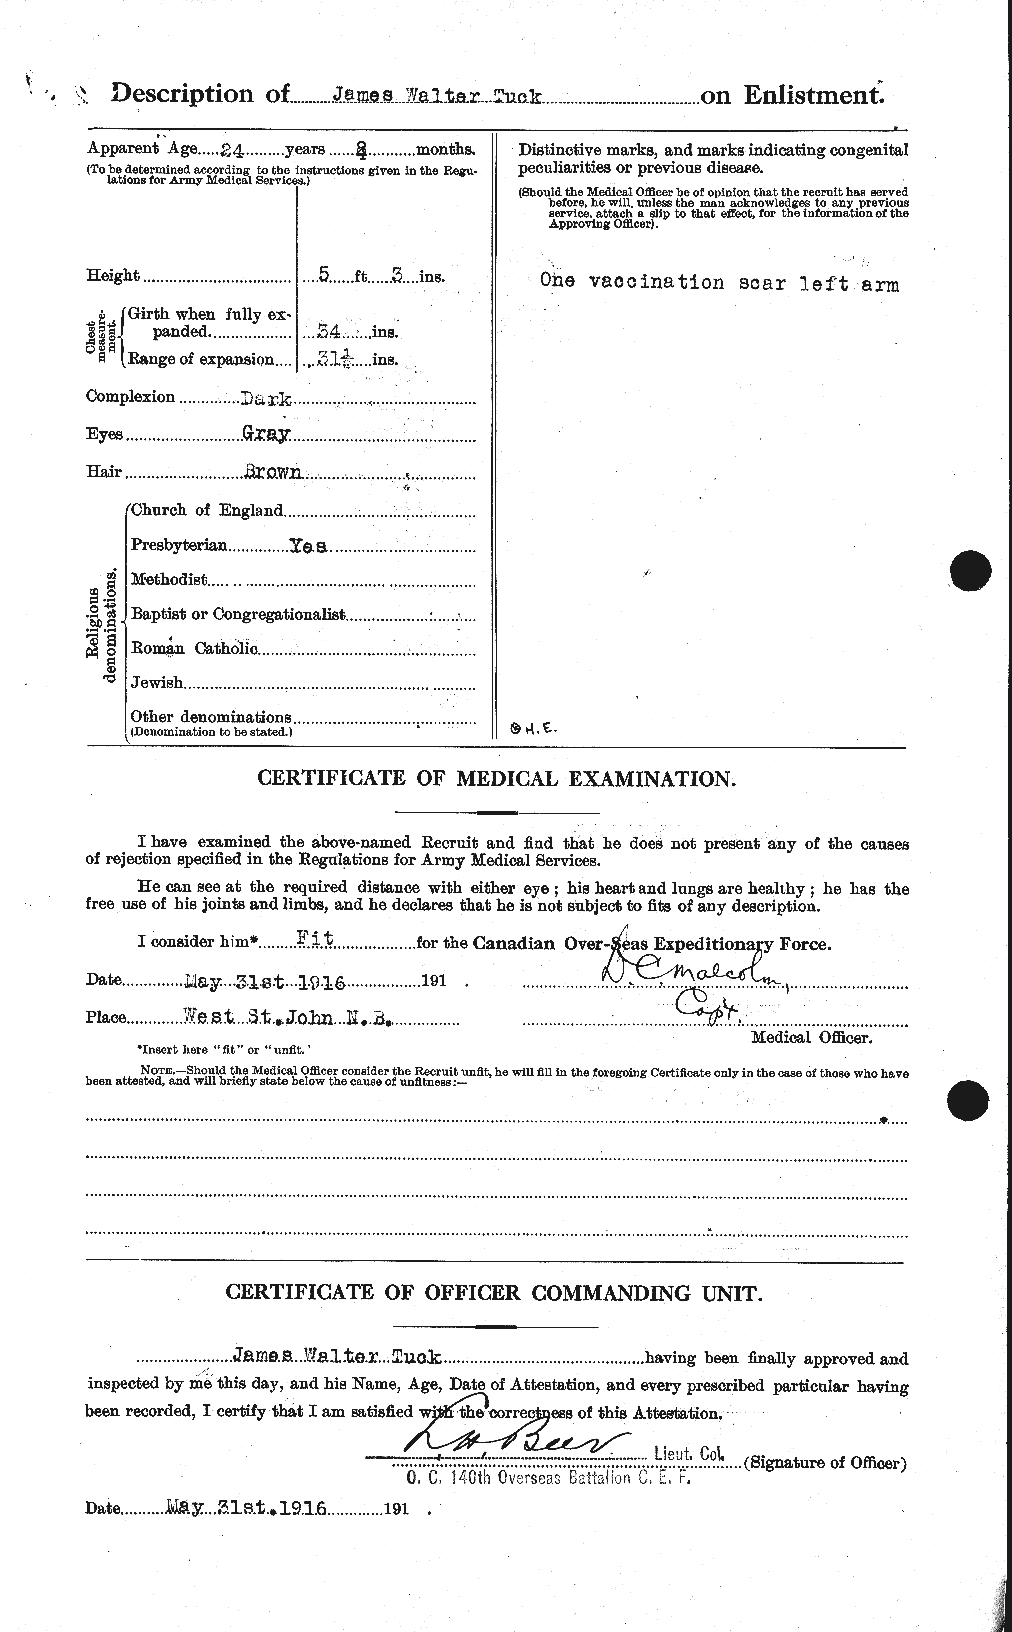 Dossiers du Personnel de la Première Guerre mondiale - CEC 641776b